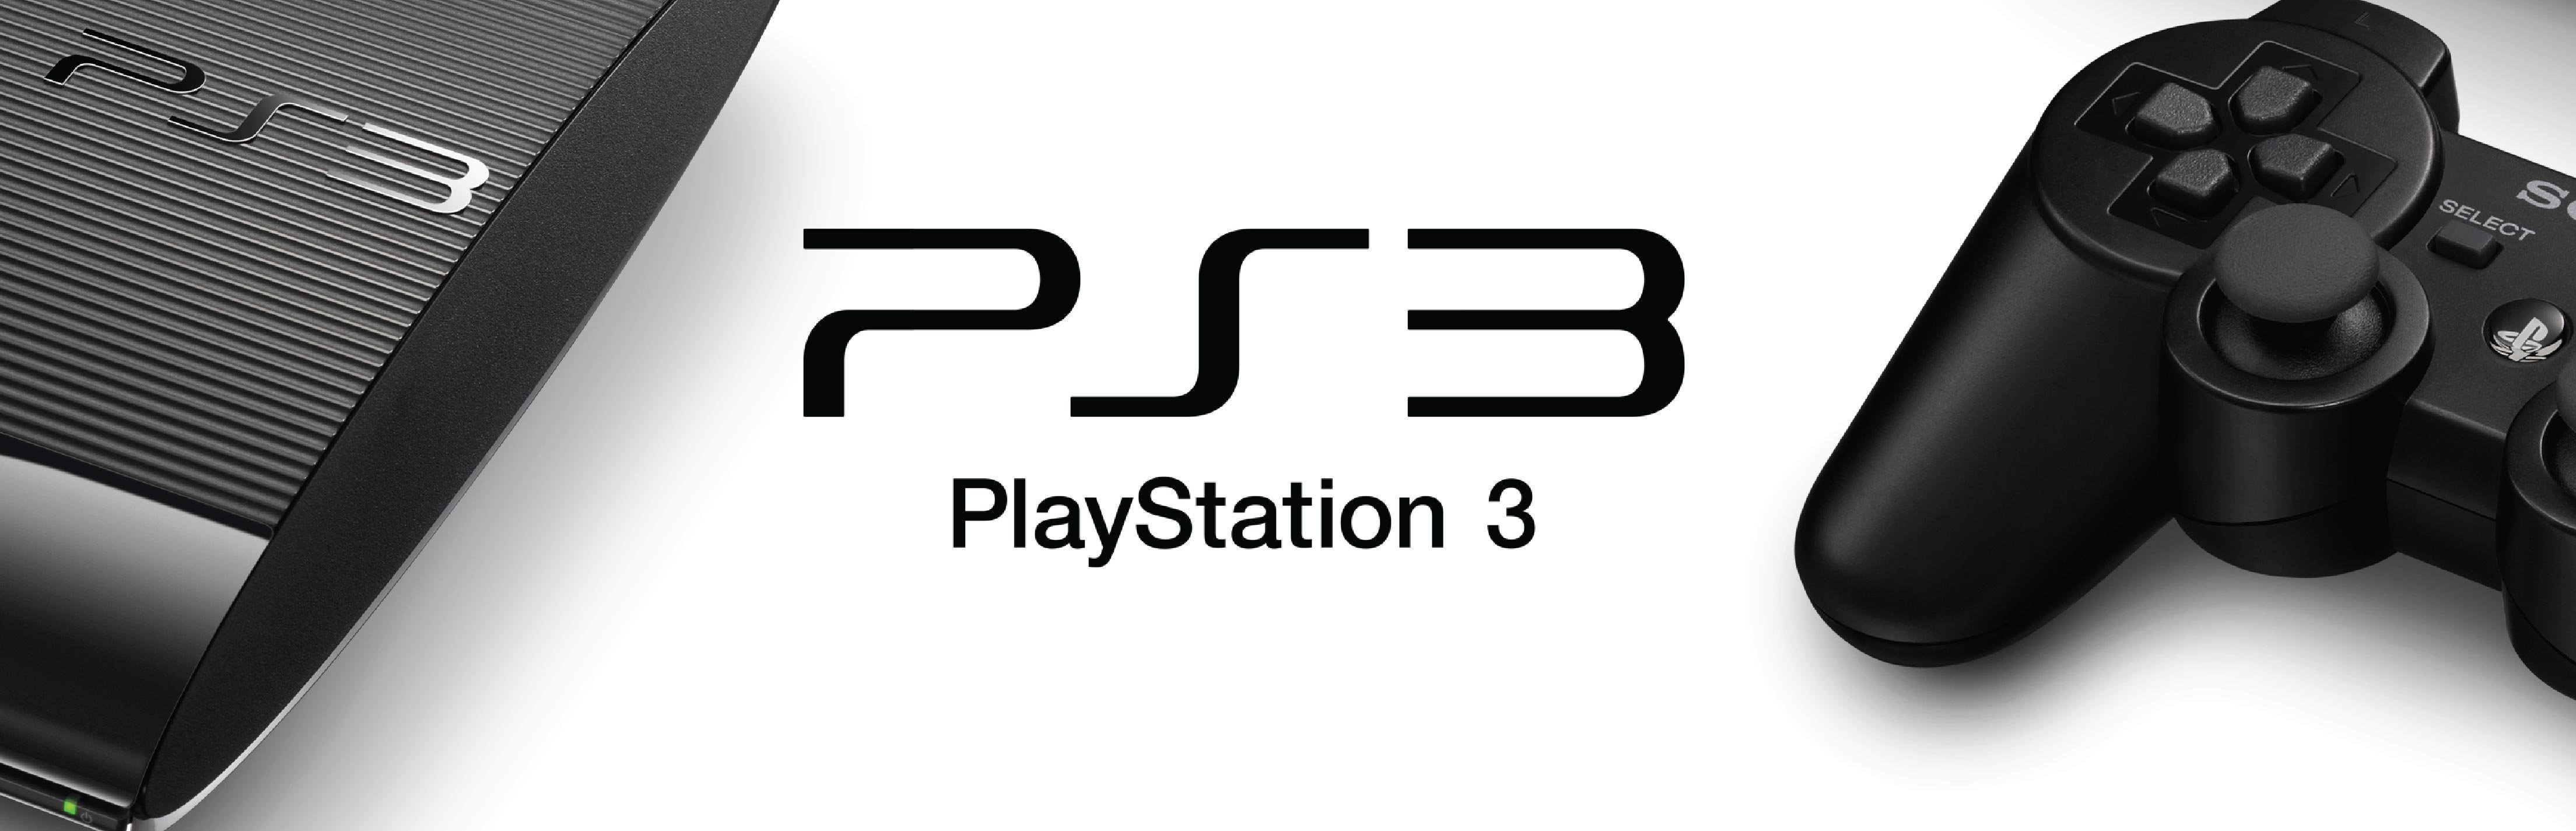 Пс3 обзоры. PLAYSTATION 5. Плейстейшен 3 ps3 logo. Консоль Sony PLAYSTATION лого. PLAYSTATION 3 e3 2005.